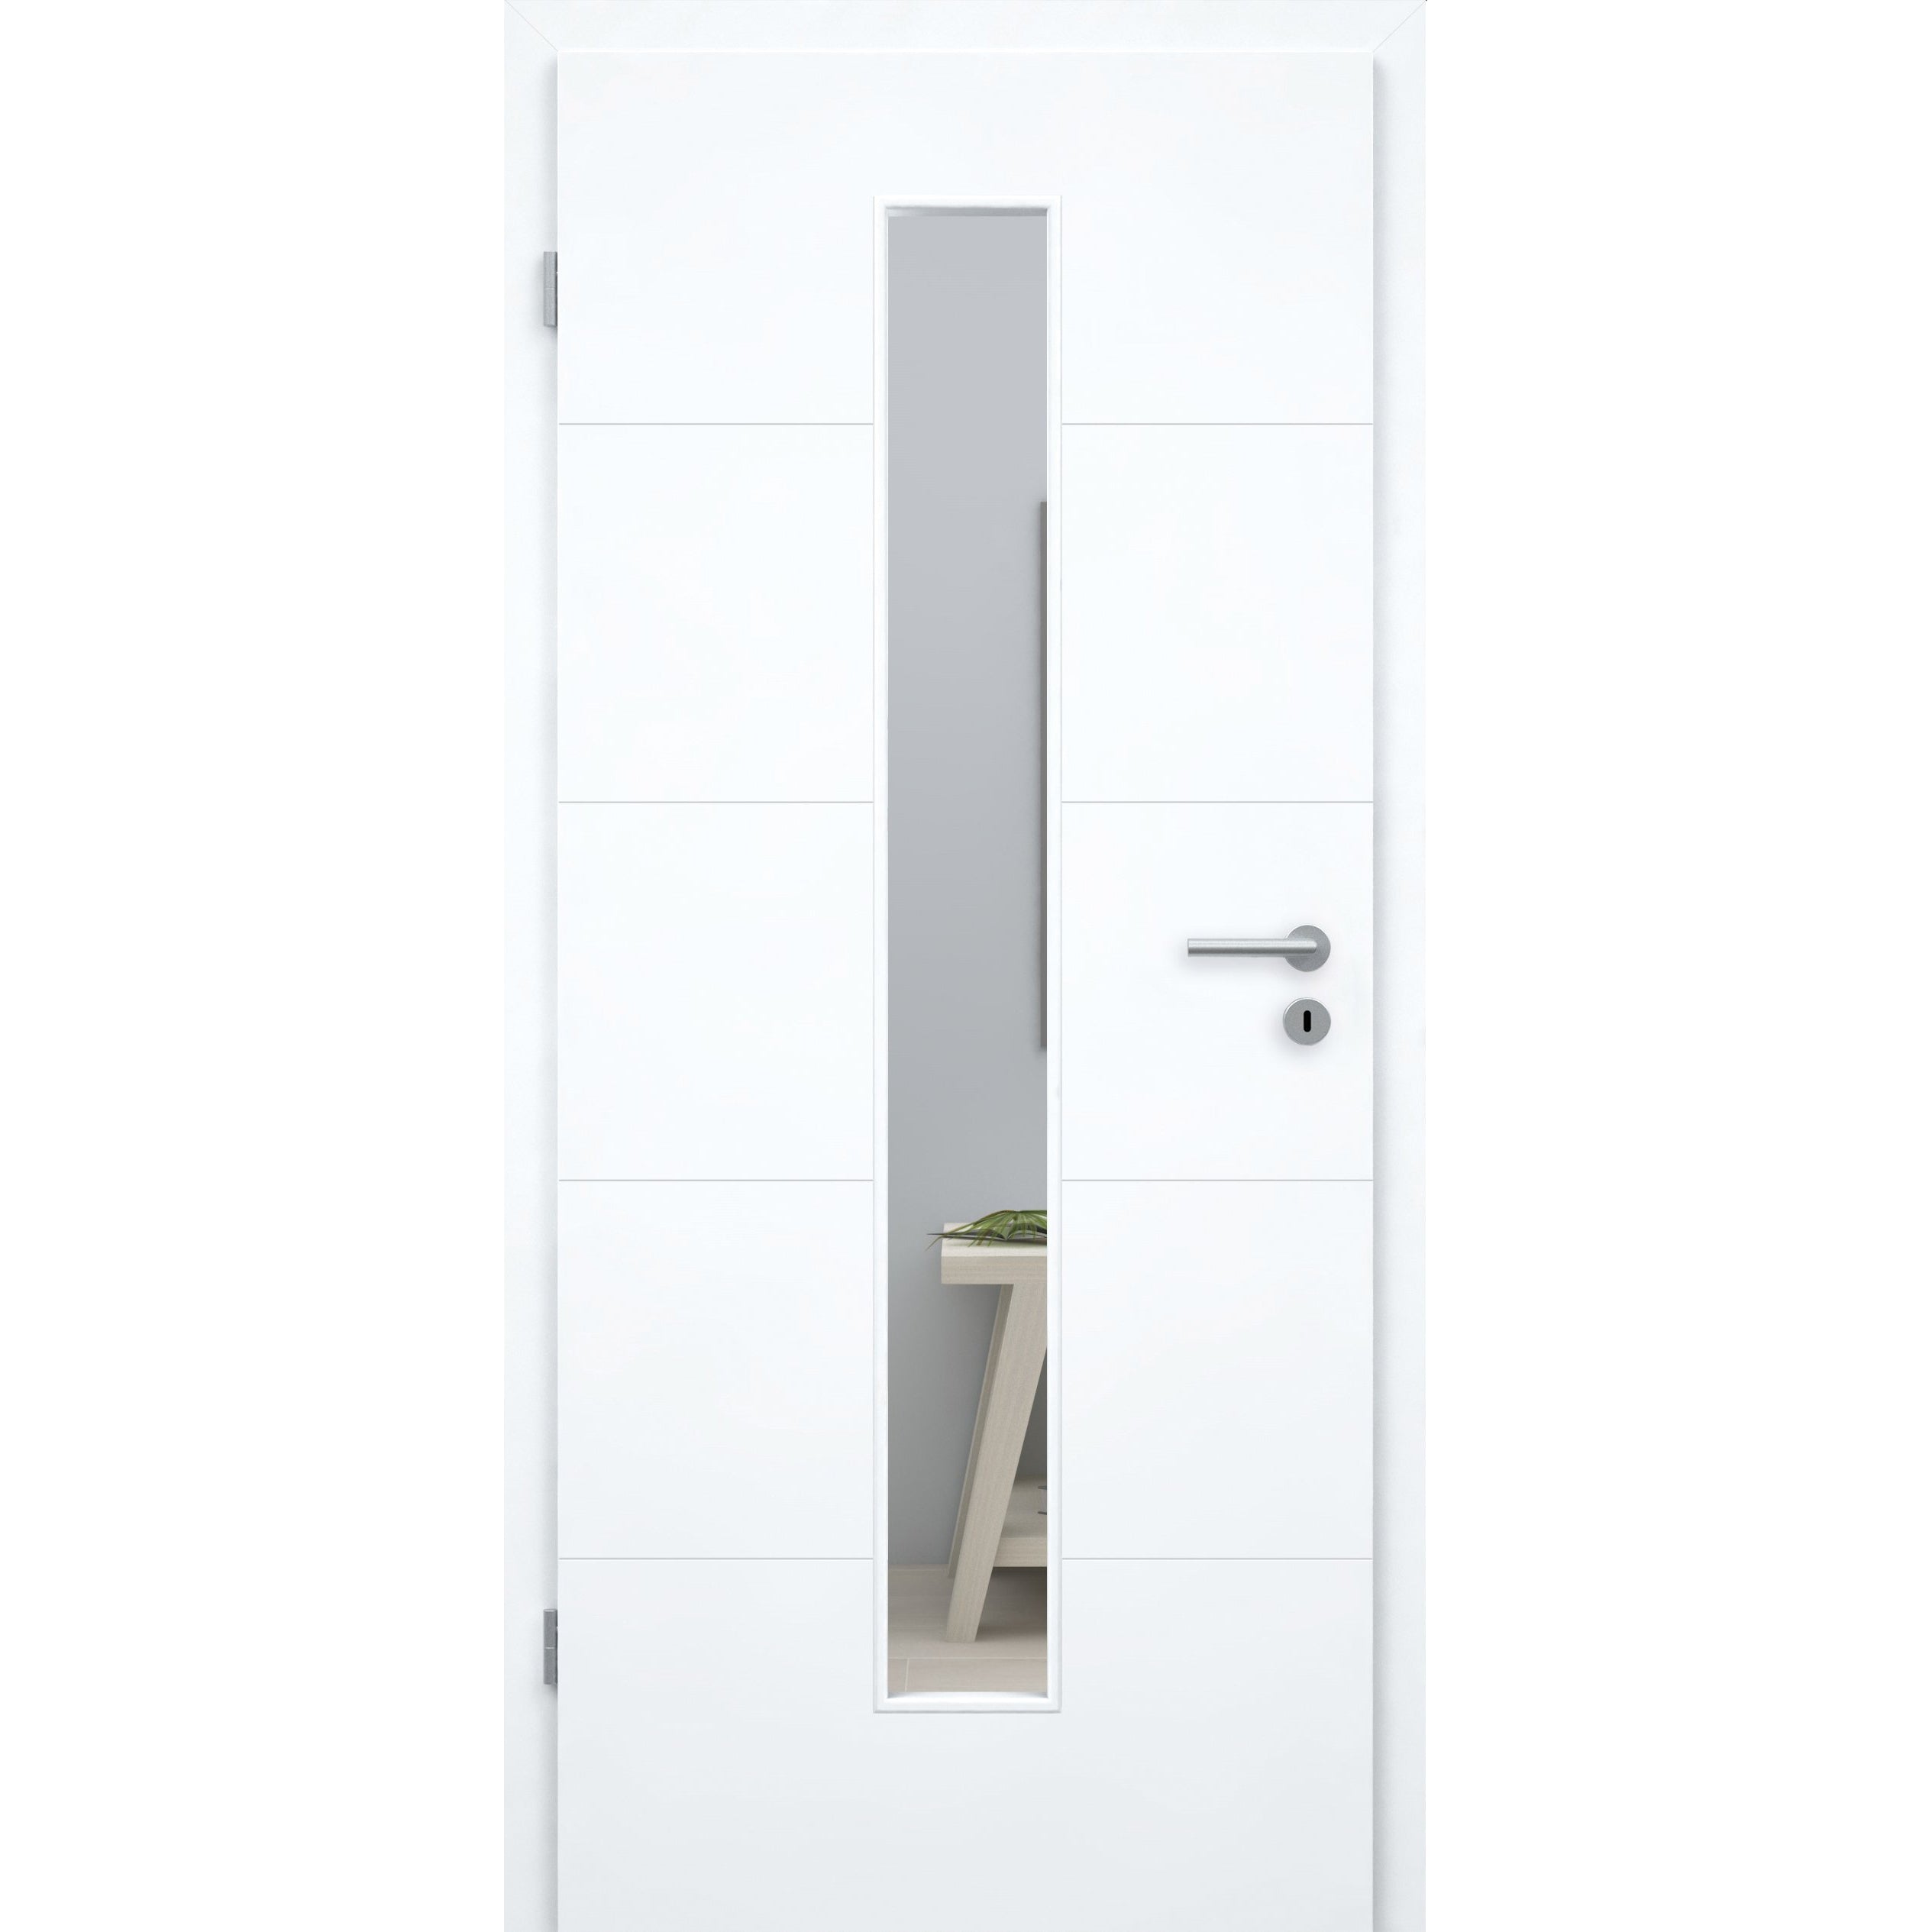 Zimmertür mit Zarge und Lichtausschnitt brillant-weiß 4 Rillen Designkante - Modell Designtür Q43LAM